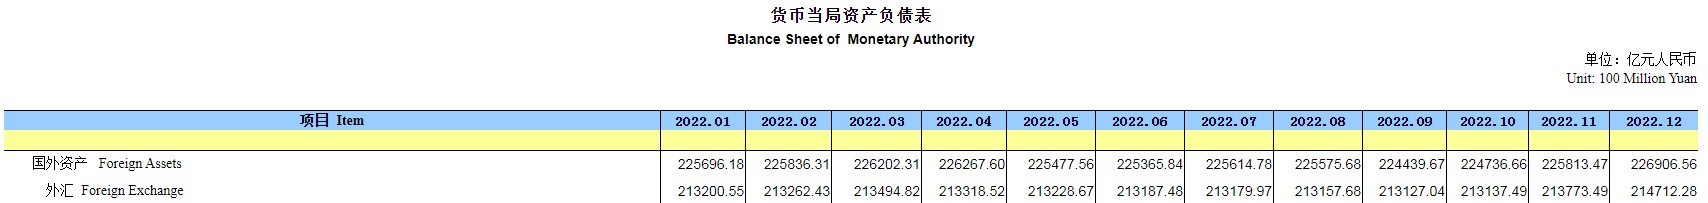 2023年1月末央行外汇占款环比增加1536.97亿元